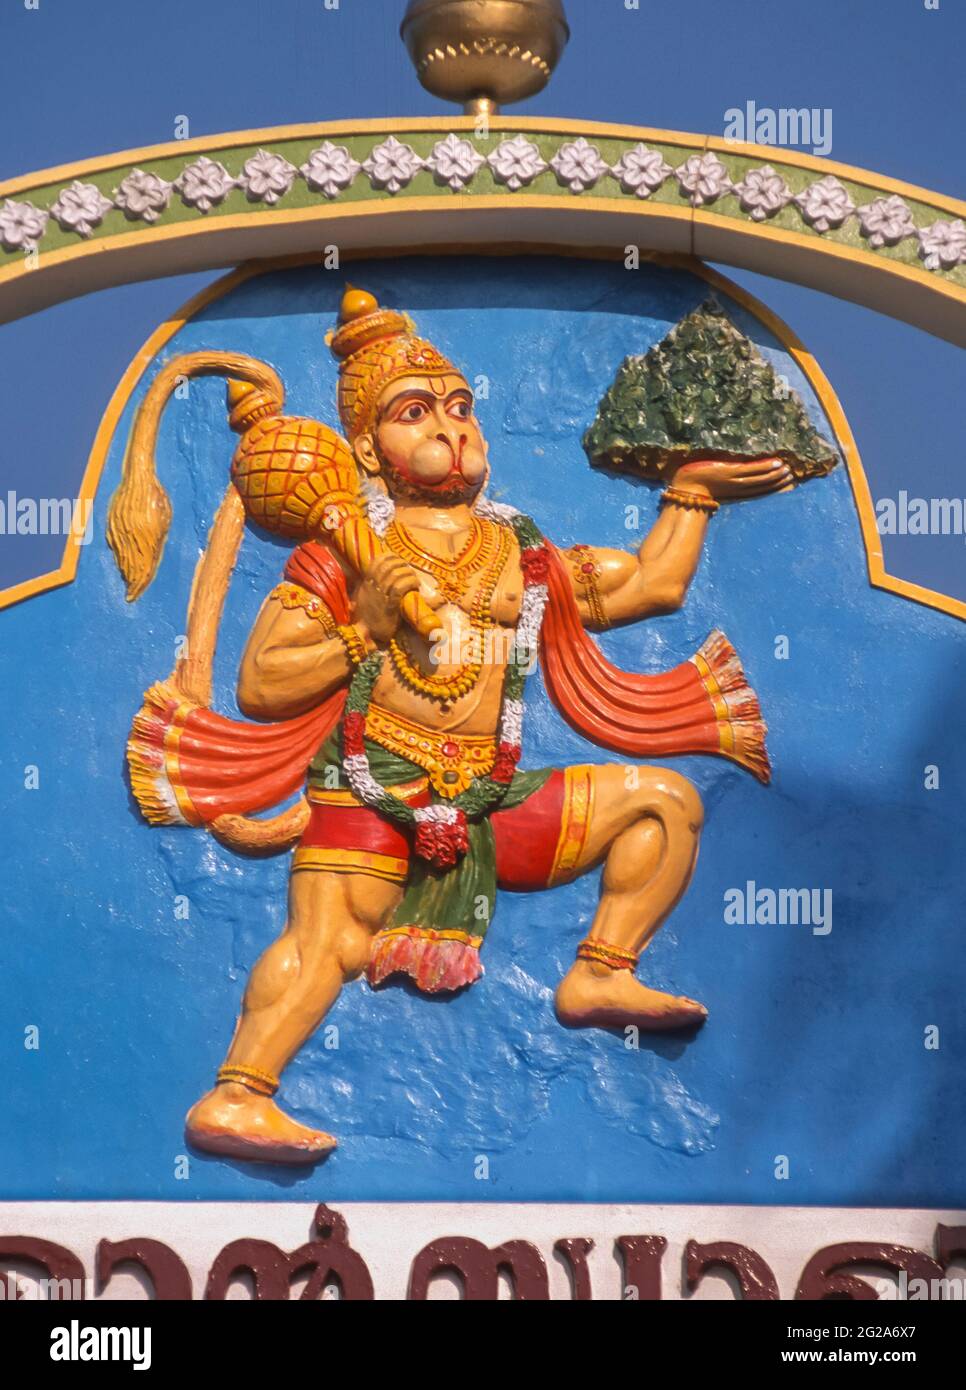 KERALA, INDE - représentation du dieu hindou Hanuman au-dessus de la porte du temple. Il lève la montagne herbacée comme preuve de force. Banque D'Images